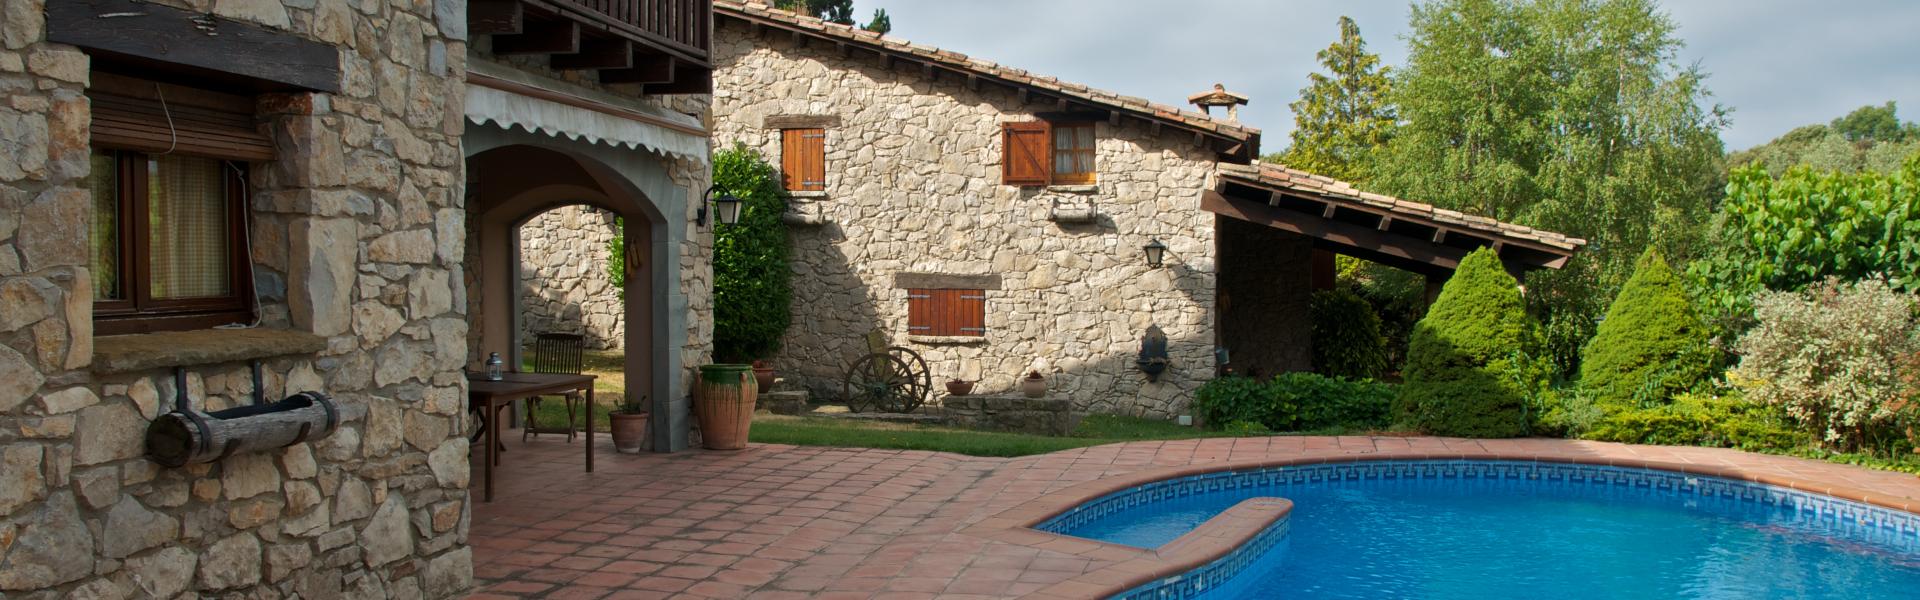 Casas rurales en la Rioja Alavesa - HomeToGo